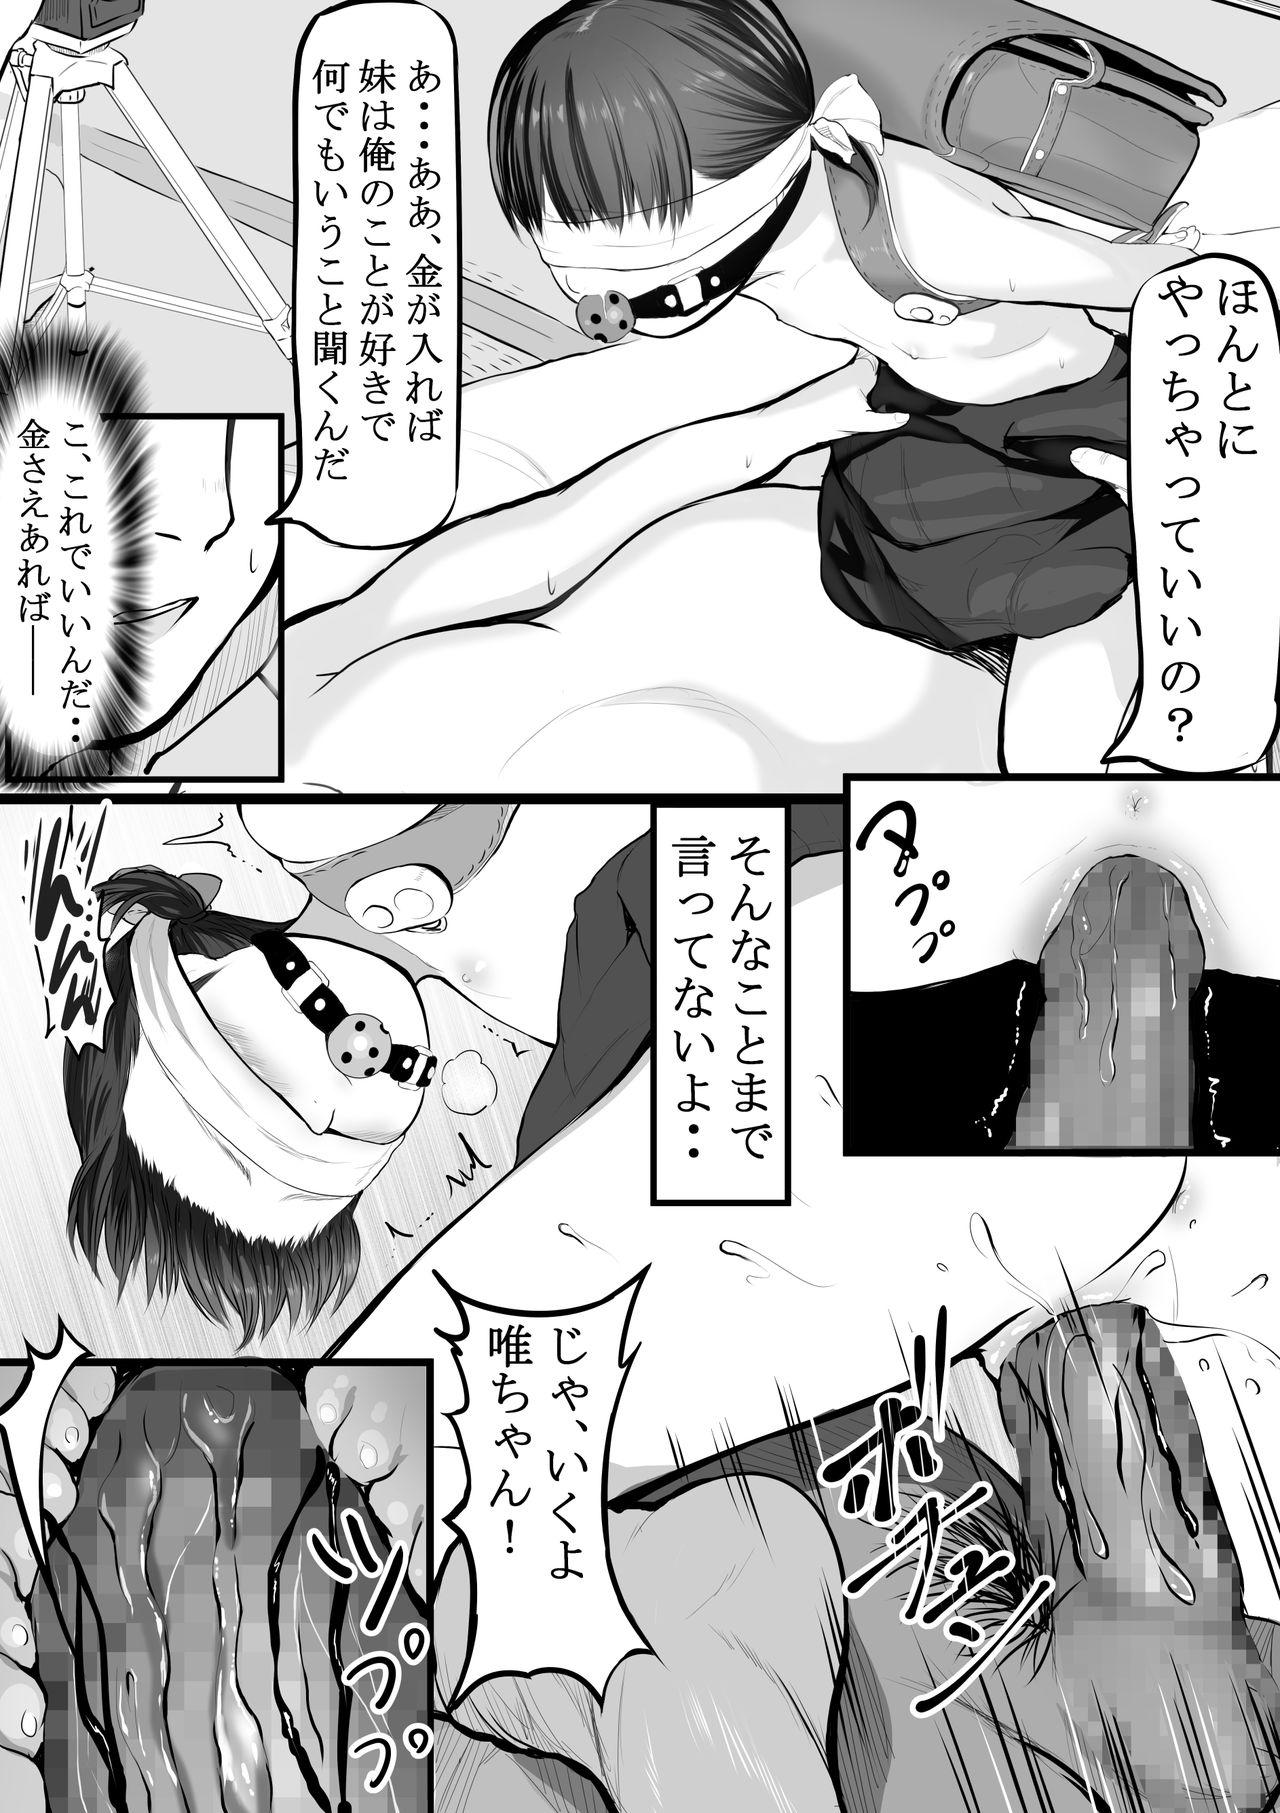 Ftvgirls Imouto Kasegi + Omake Illust - Original Affair - Page 3